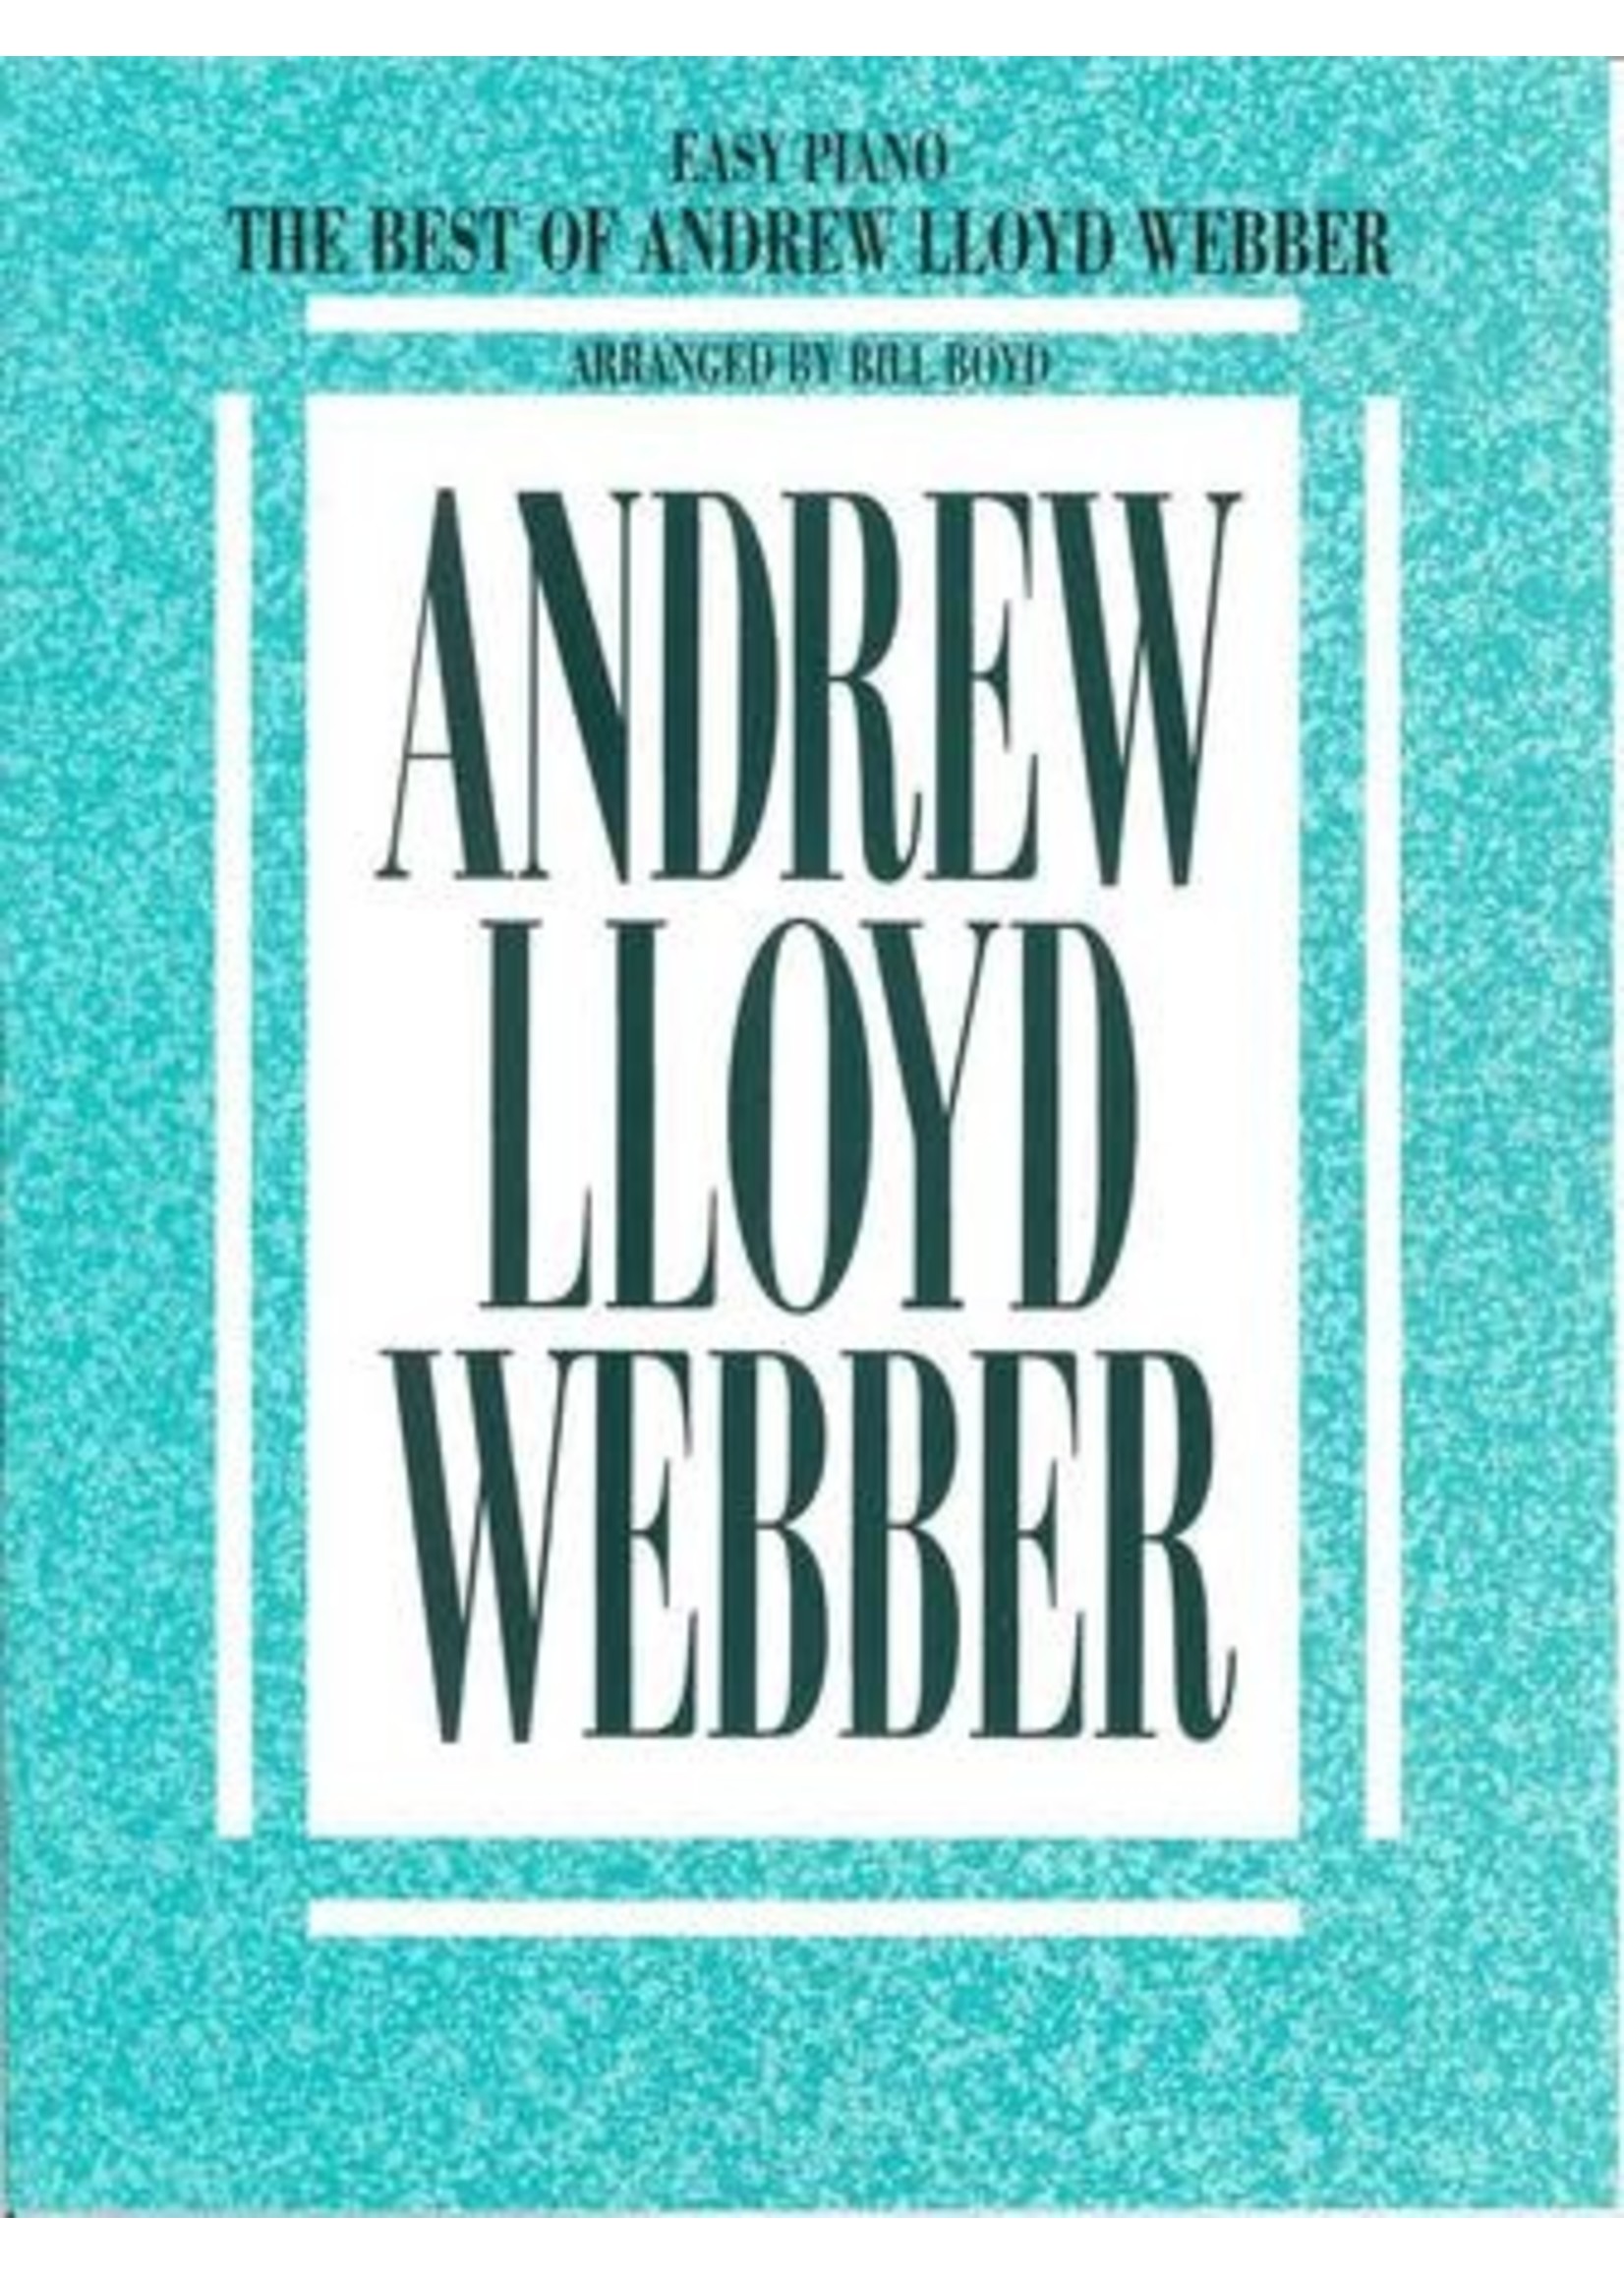 Hal Leonard The Best of Andrew Lloyd Webber EP